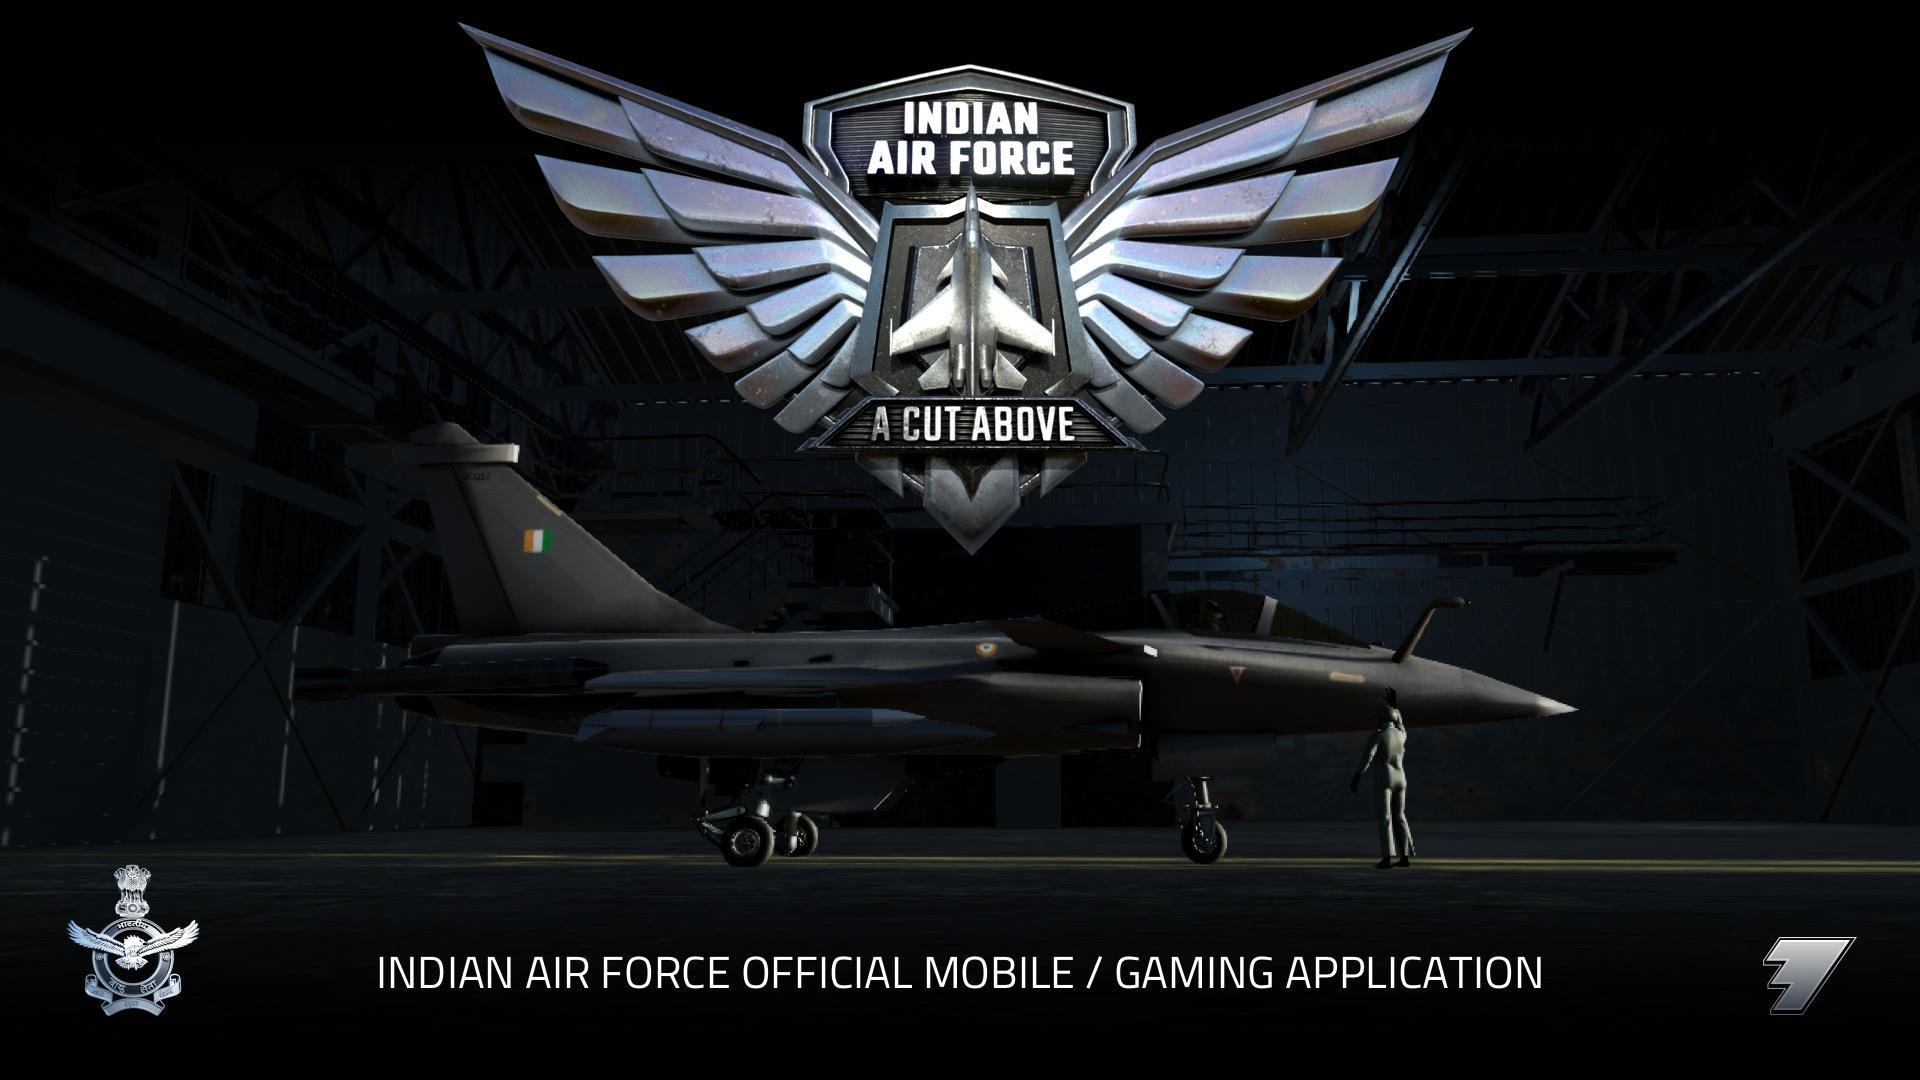 Screenshot 1 of Fuerza aérea india: un corte por encima 1.5.4